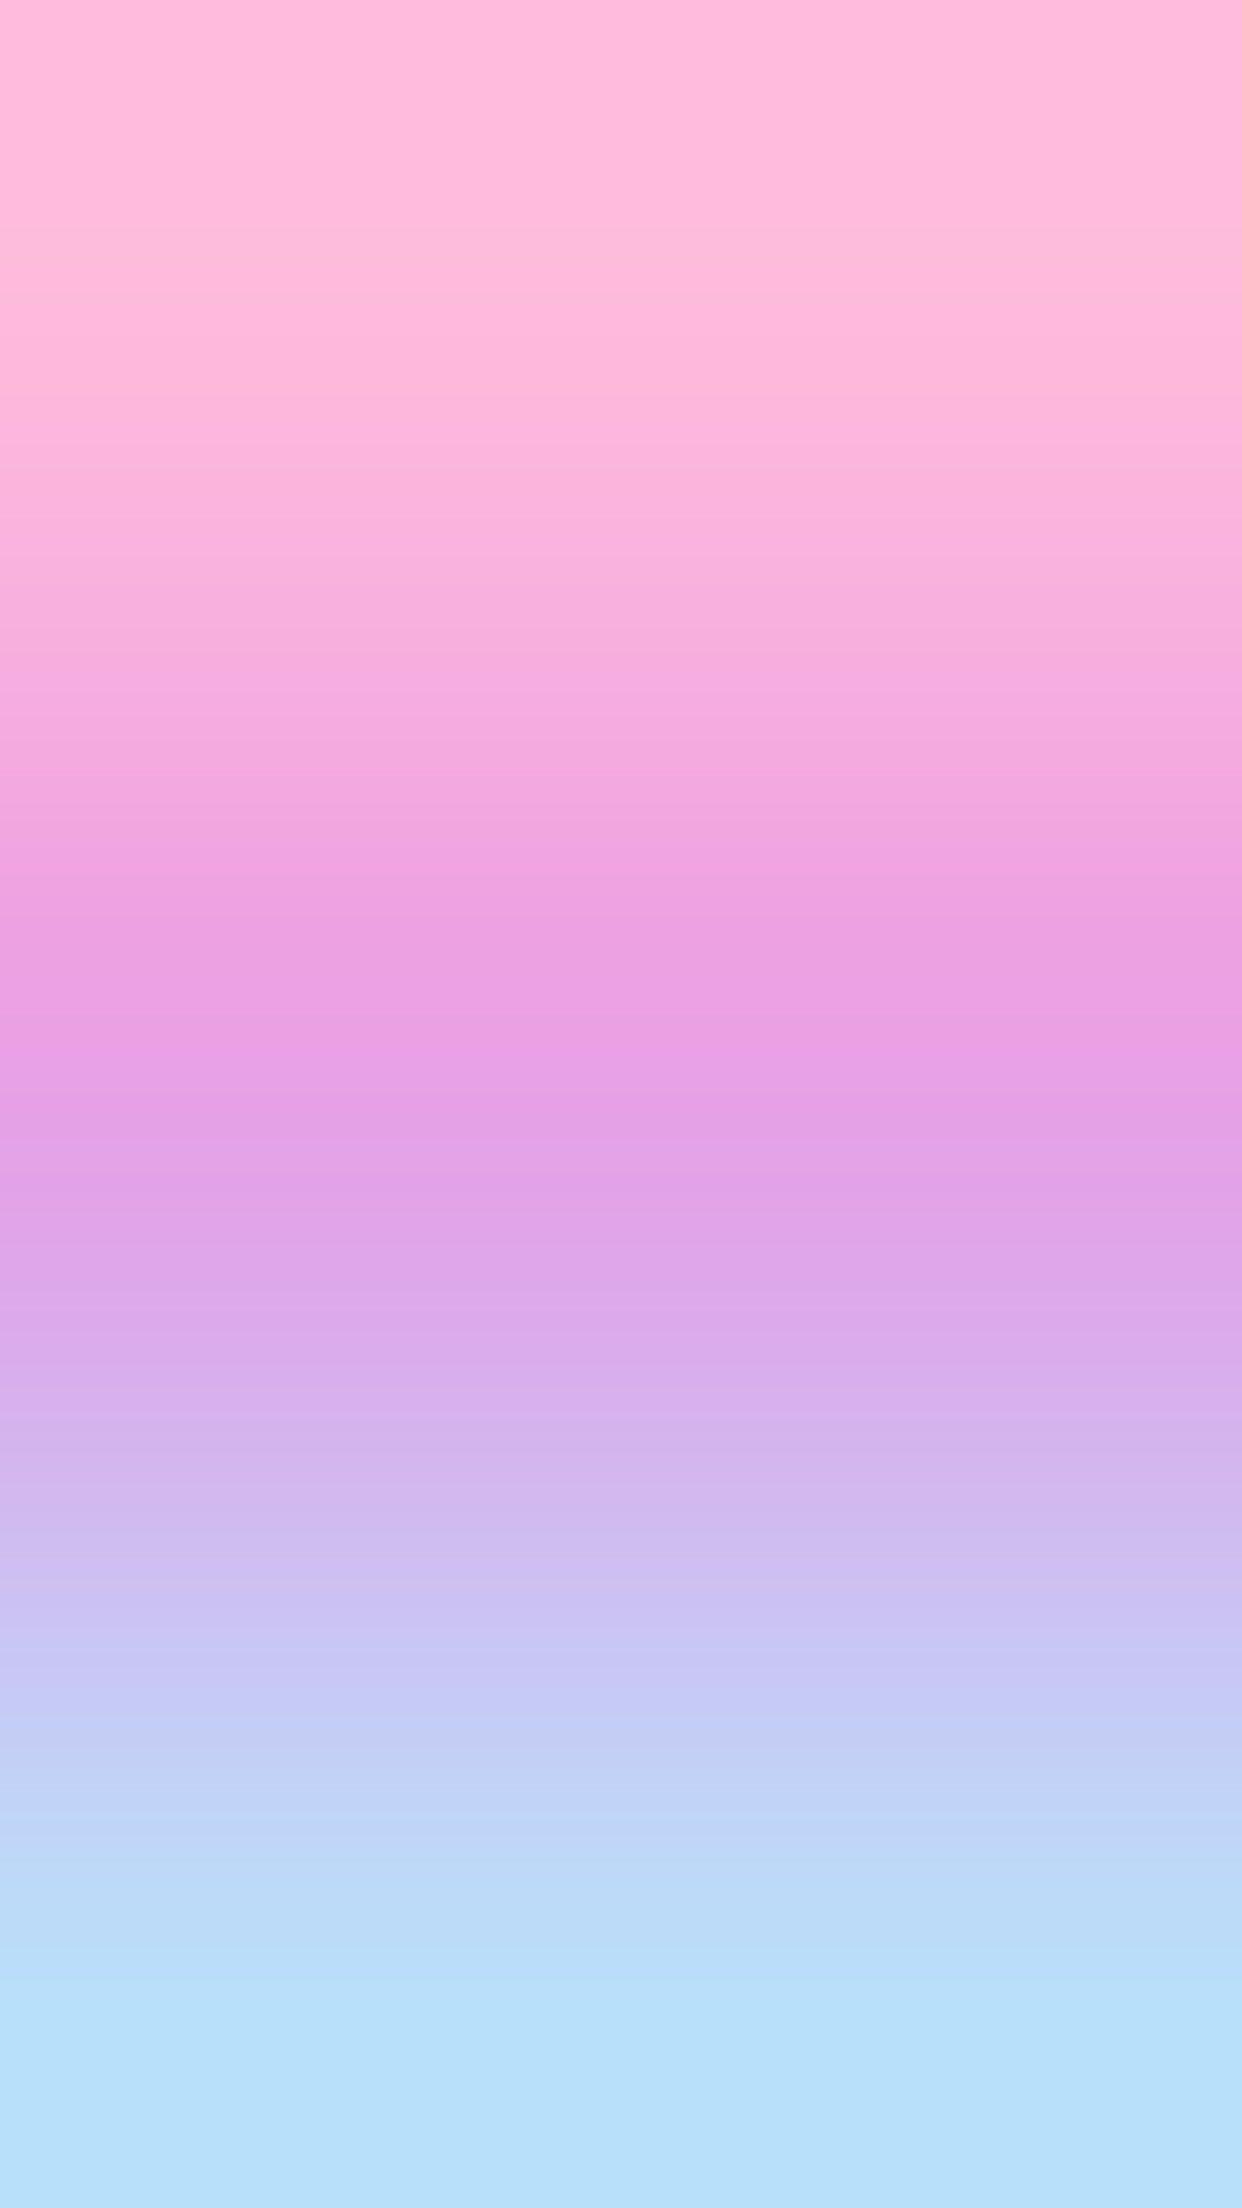 1242x2208 Hình nền màu hồng tím xanh lam